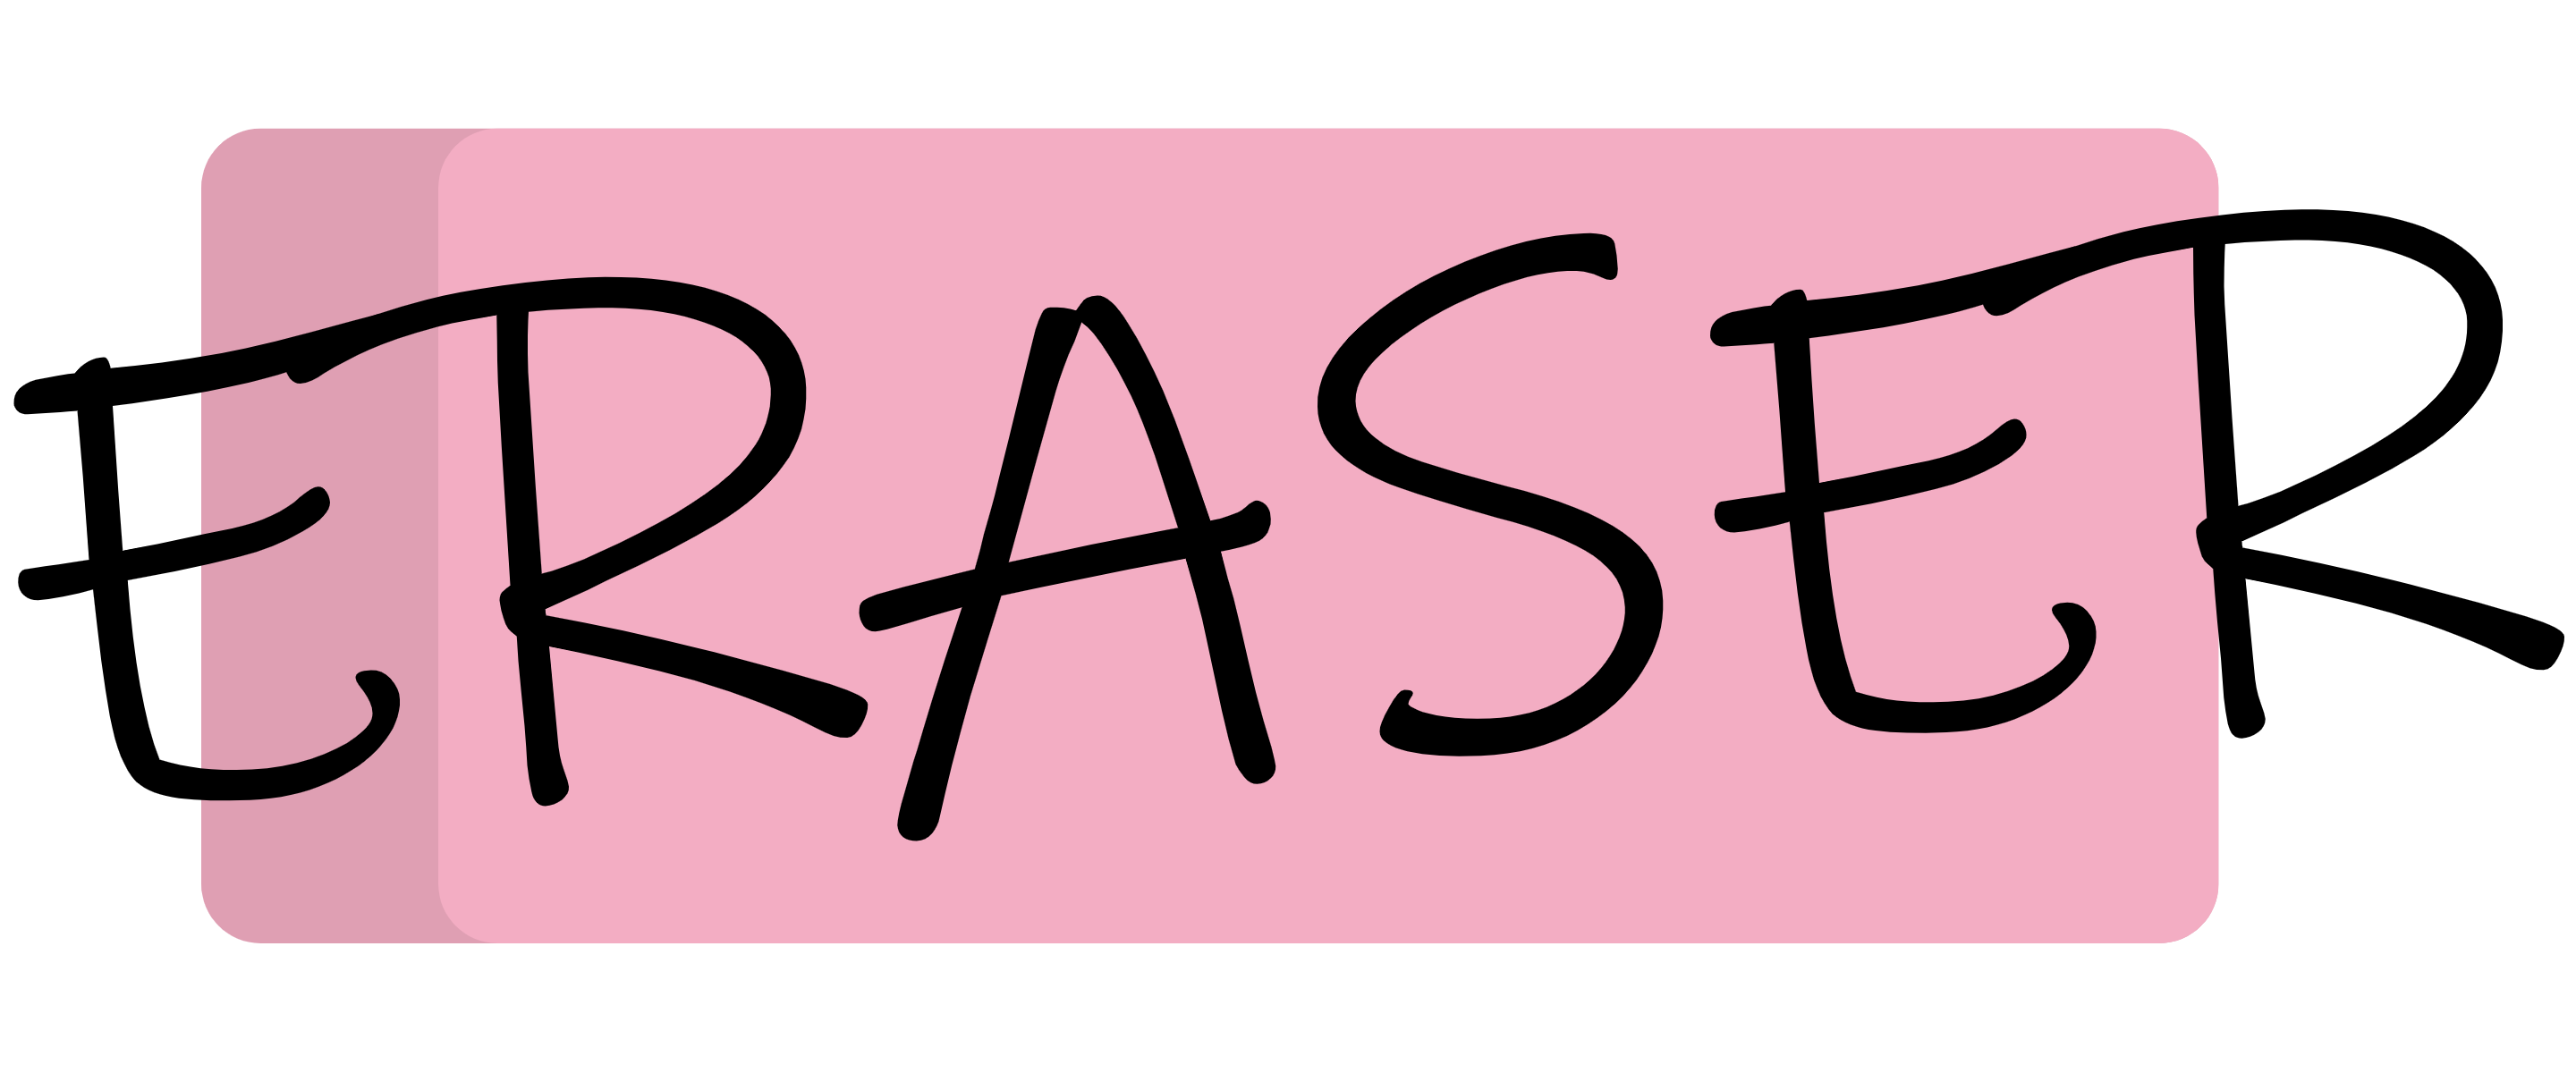 Eraser Theatre logo